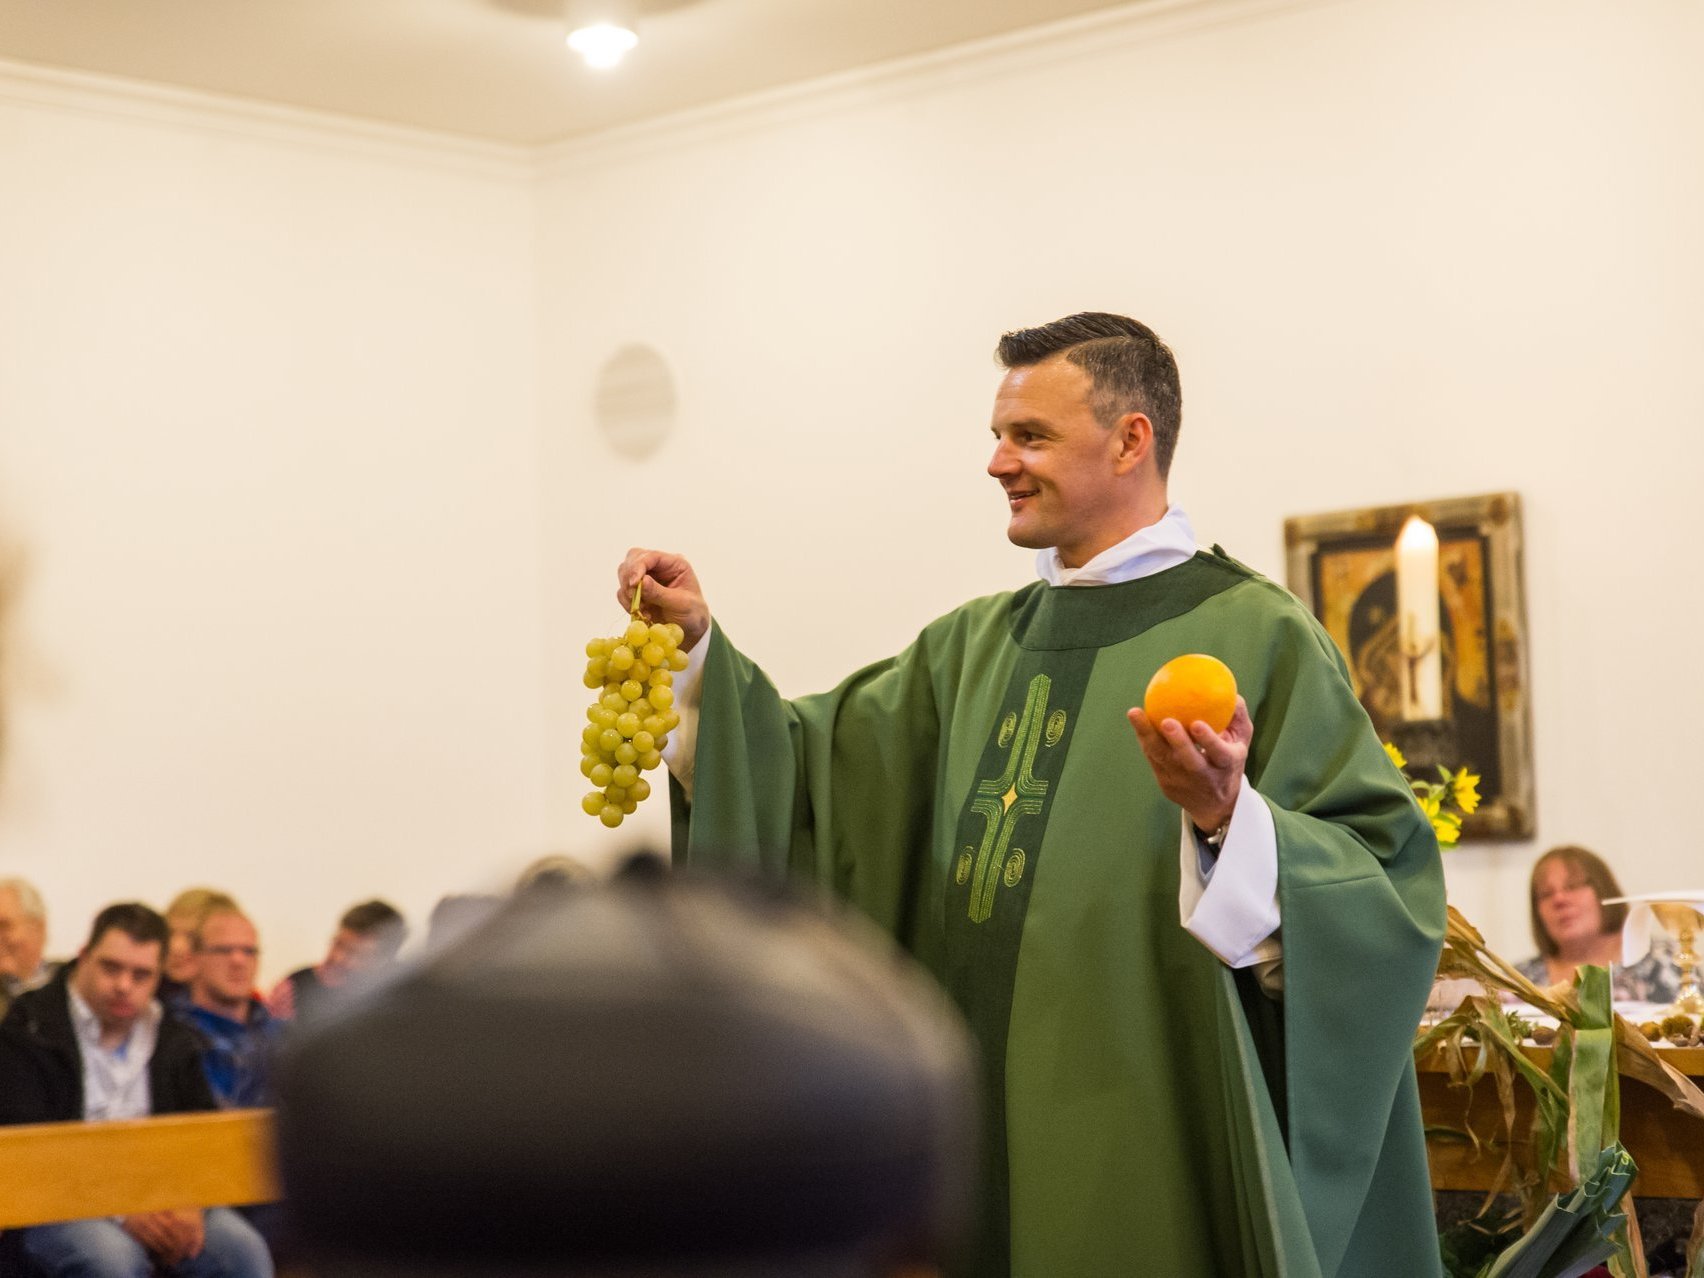 in der Kirche: Pater Jörg in der Kirche hält Weintrauben und eine Orange in der Hand